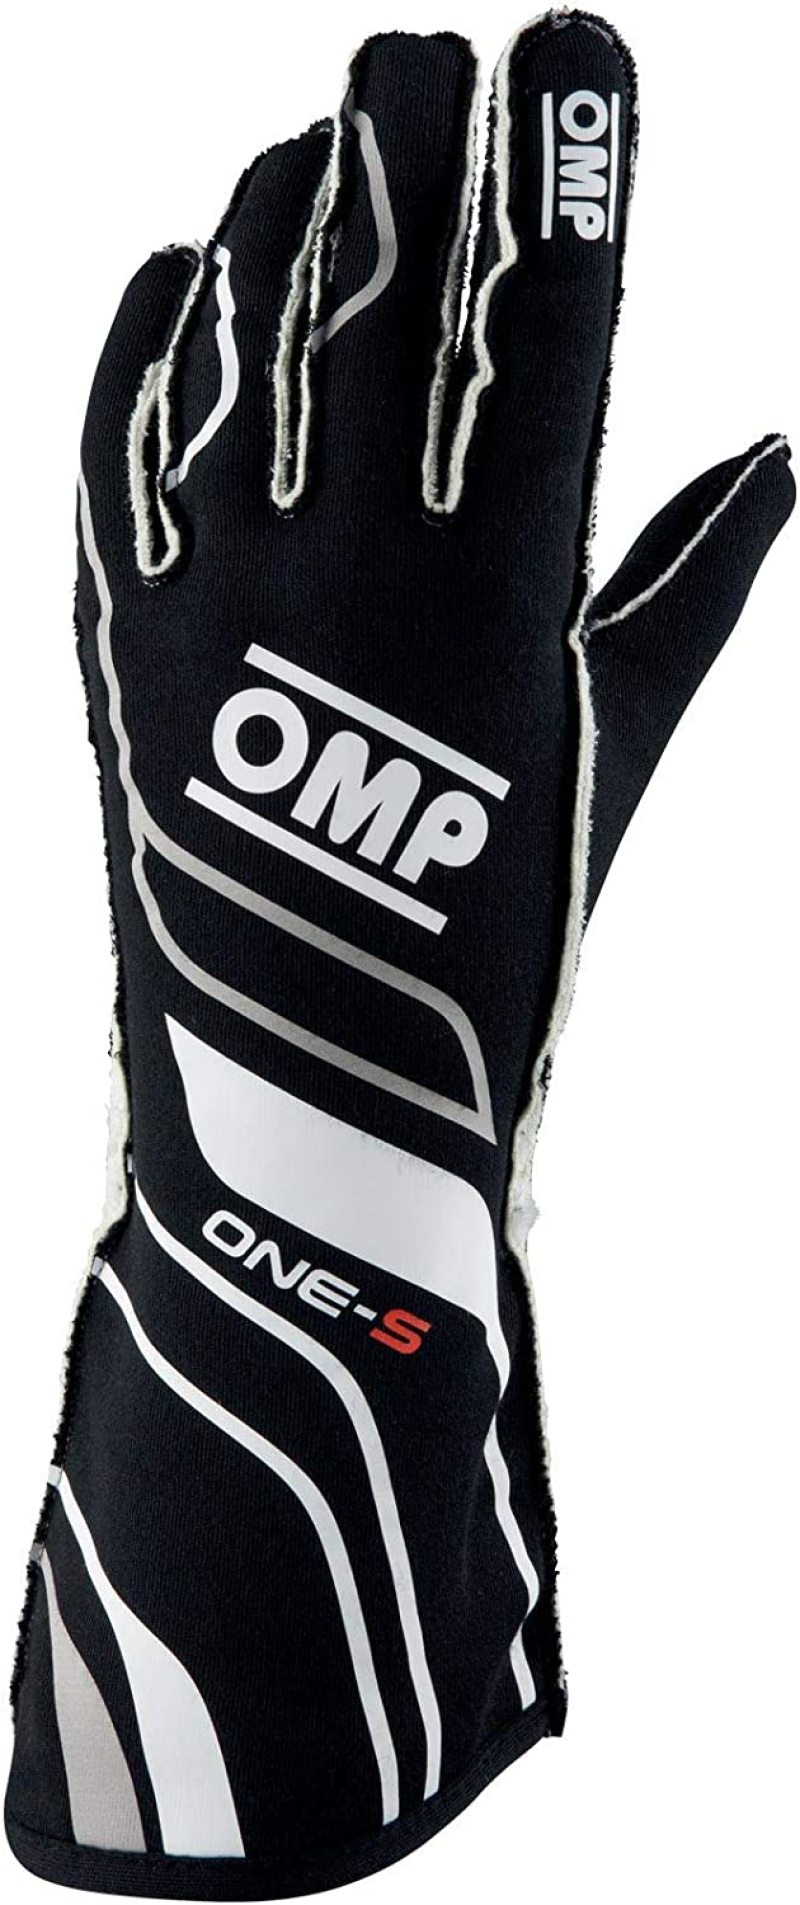 OMP One-S Gloves Black - Size XL Fia 8556-2018 - IB0-0770-A01-071-XL